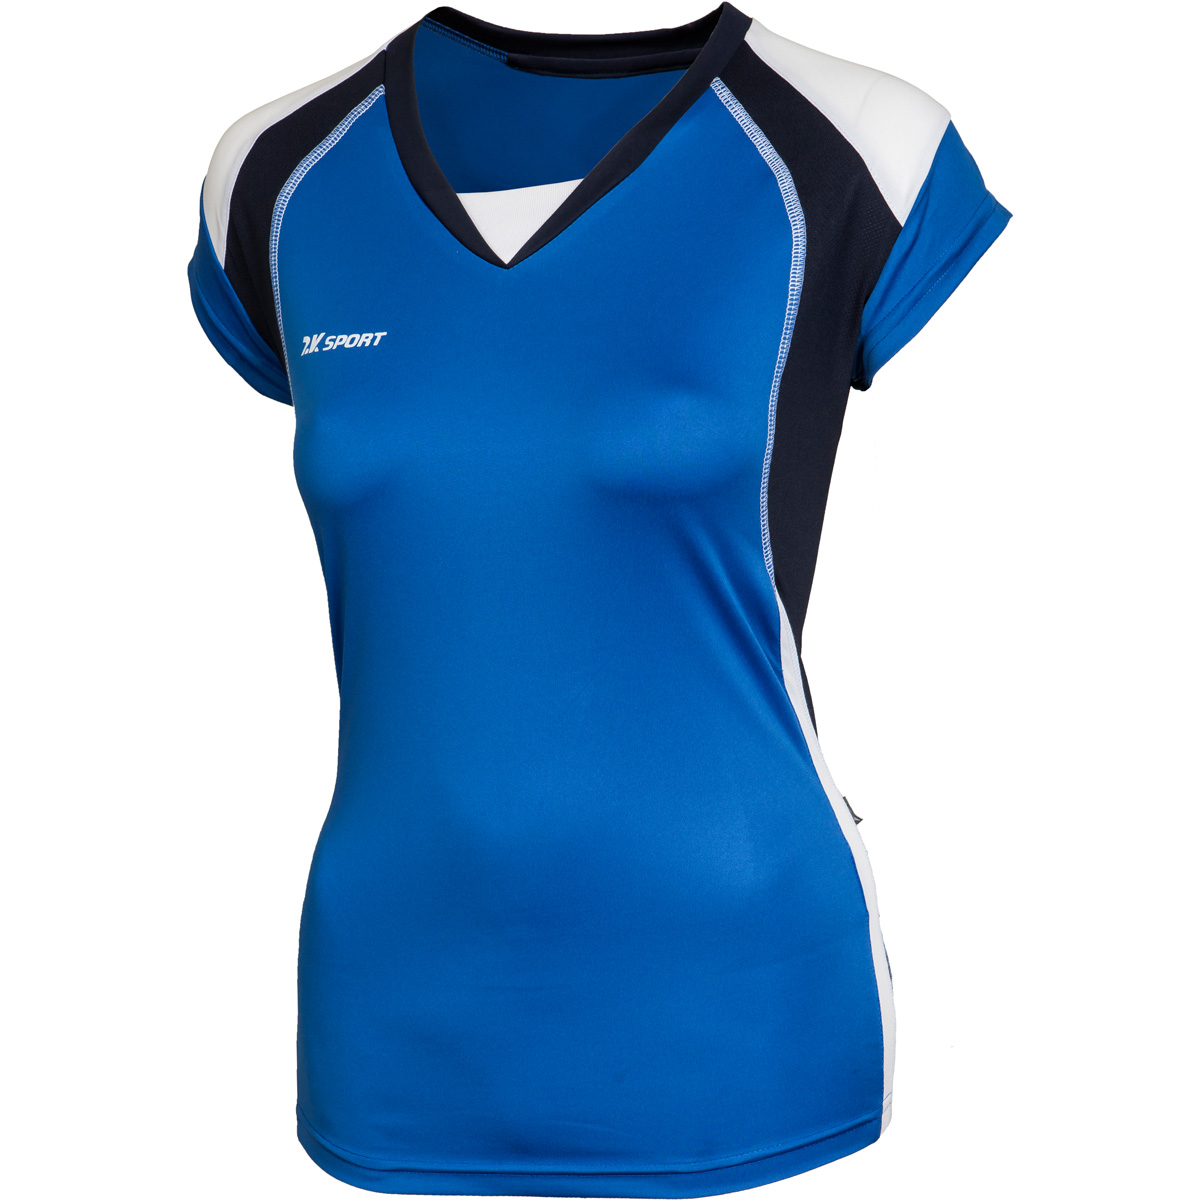 Футболка волейбольная женская 2K Sport Energy, цвет: синий, темно-синий, белый. 140042. Размер S (42/44)